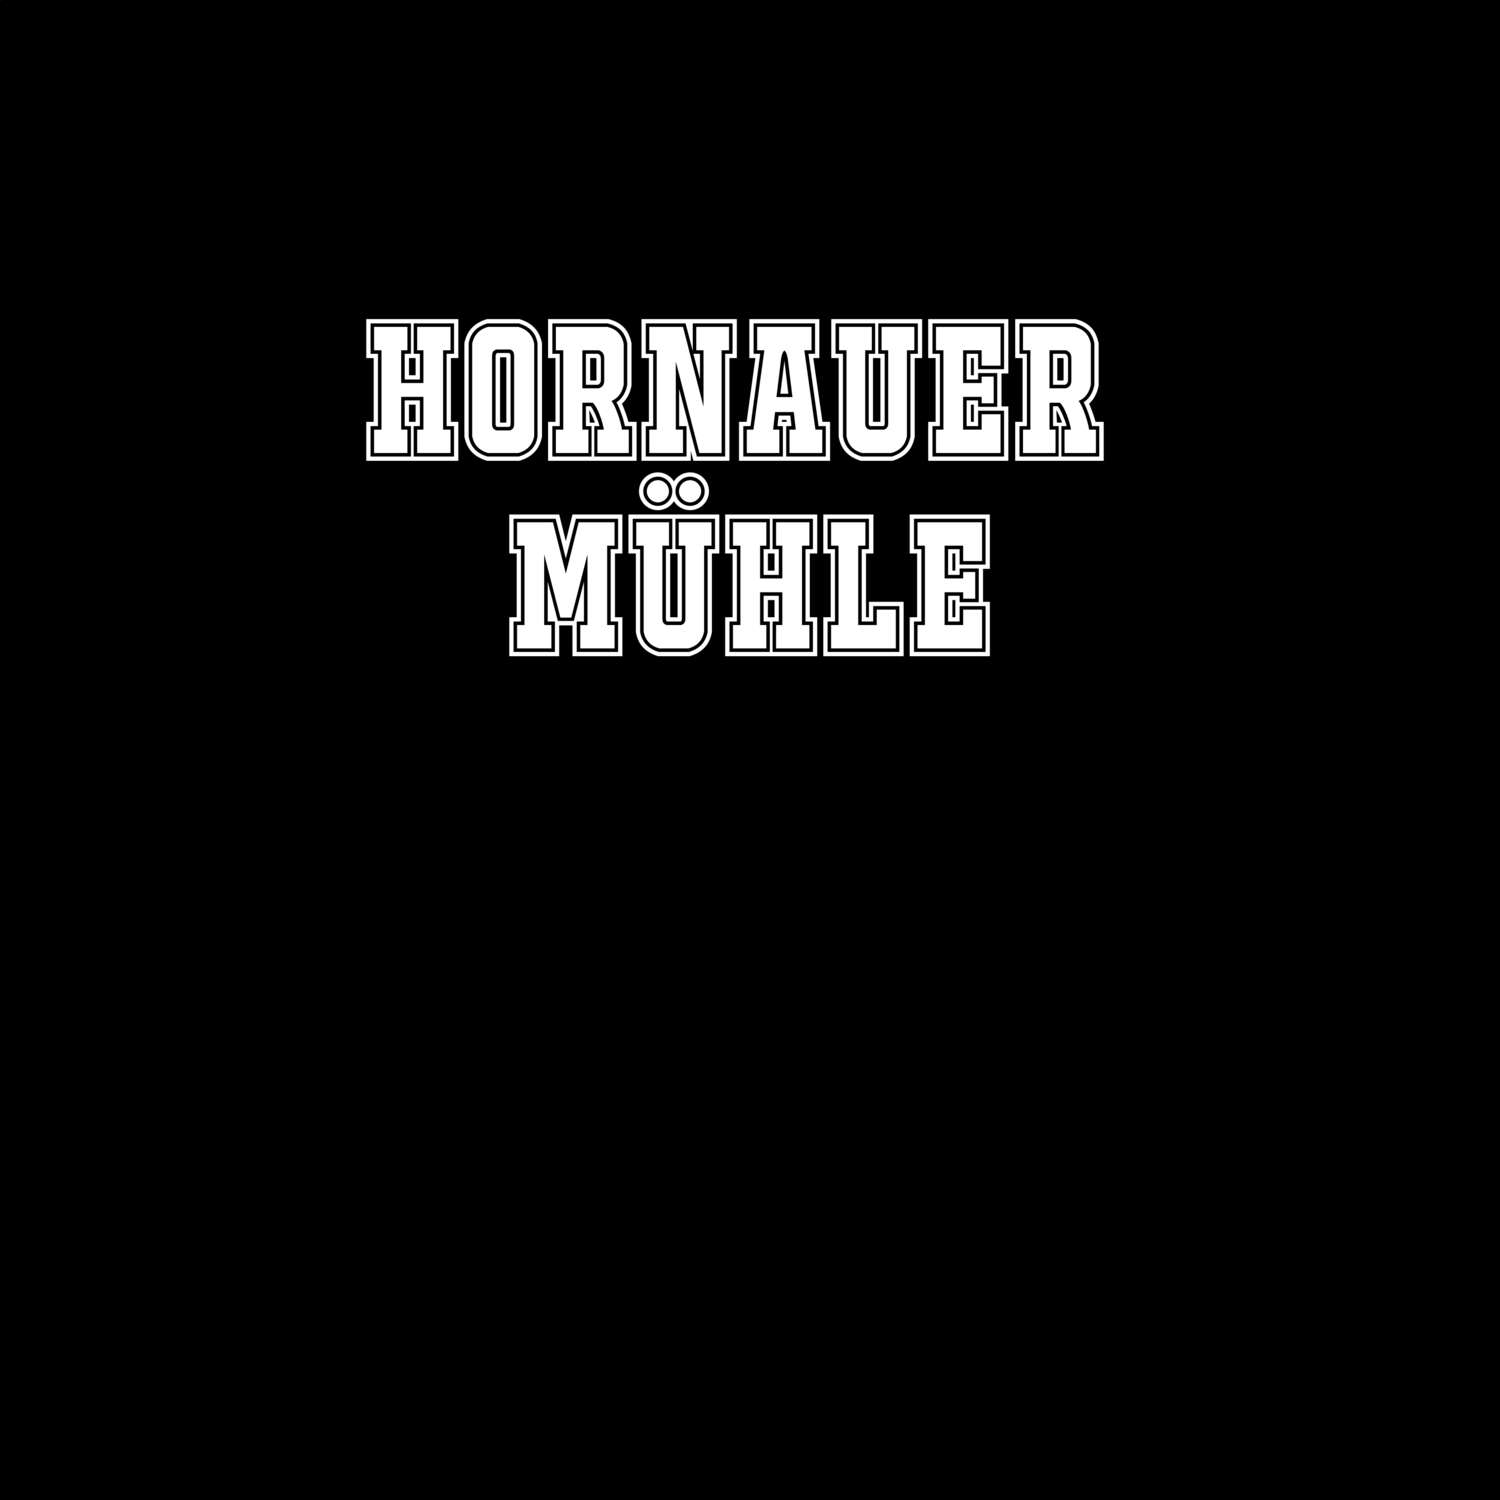 Hornauer Mühle T-Shirt »Classic«